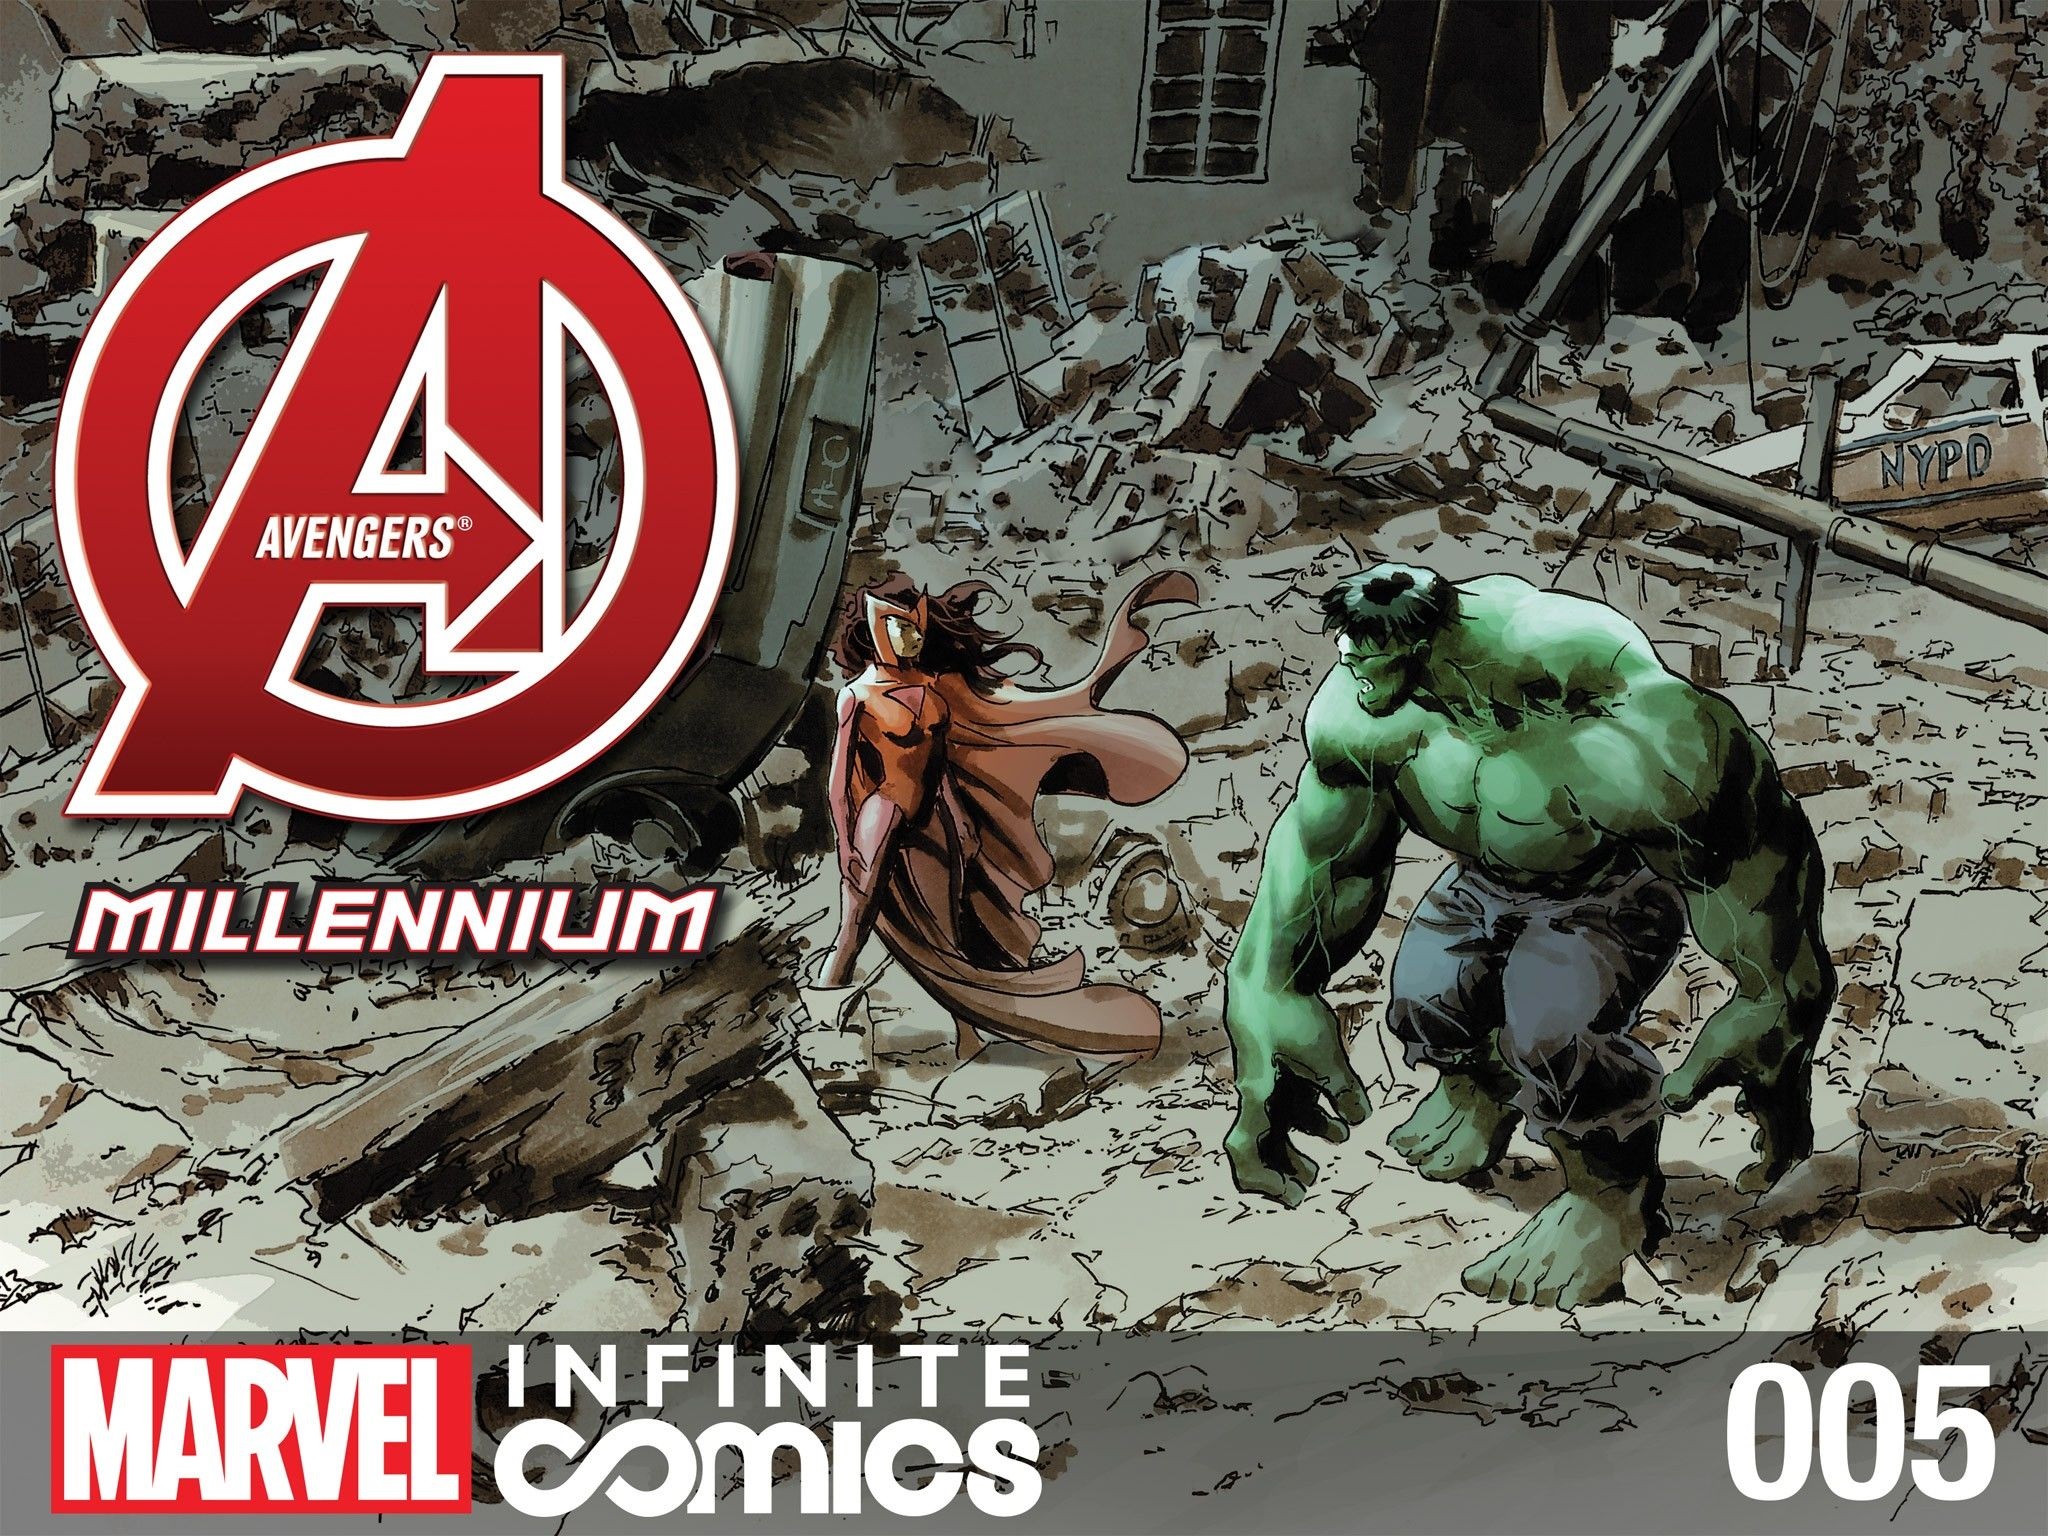 Avengers: Millennium Infinite Comic Vol. 1 #5